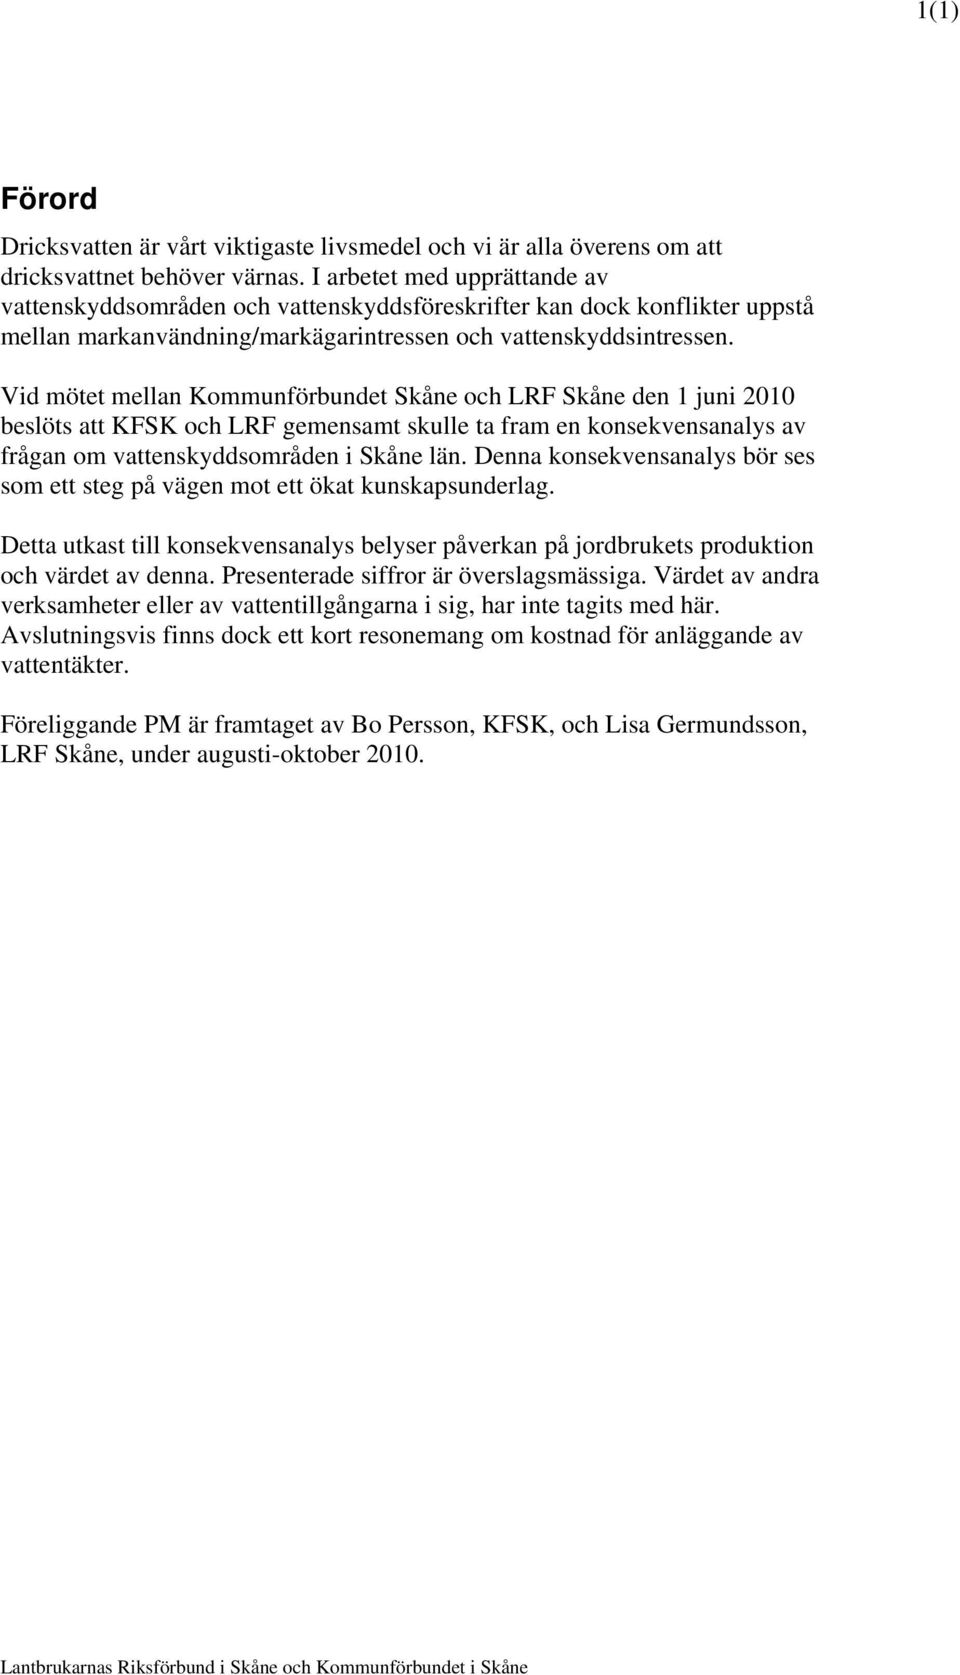 Vid mötet mellan Kommunförbundet Skåne och LRF Skåne den 1 juni 2010 beslöts att KFSK och LRF gemensamt skulle ta fram en konsekvensanalys av frågan om vattenskyddsområden i Skåne län.